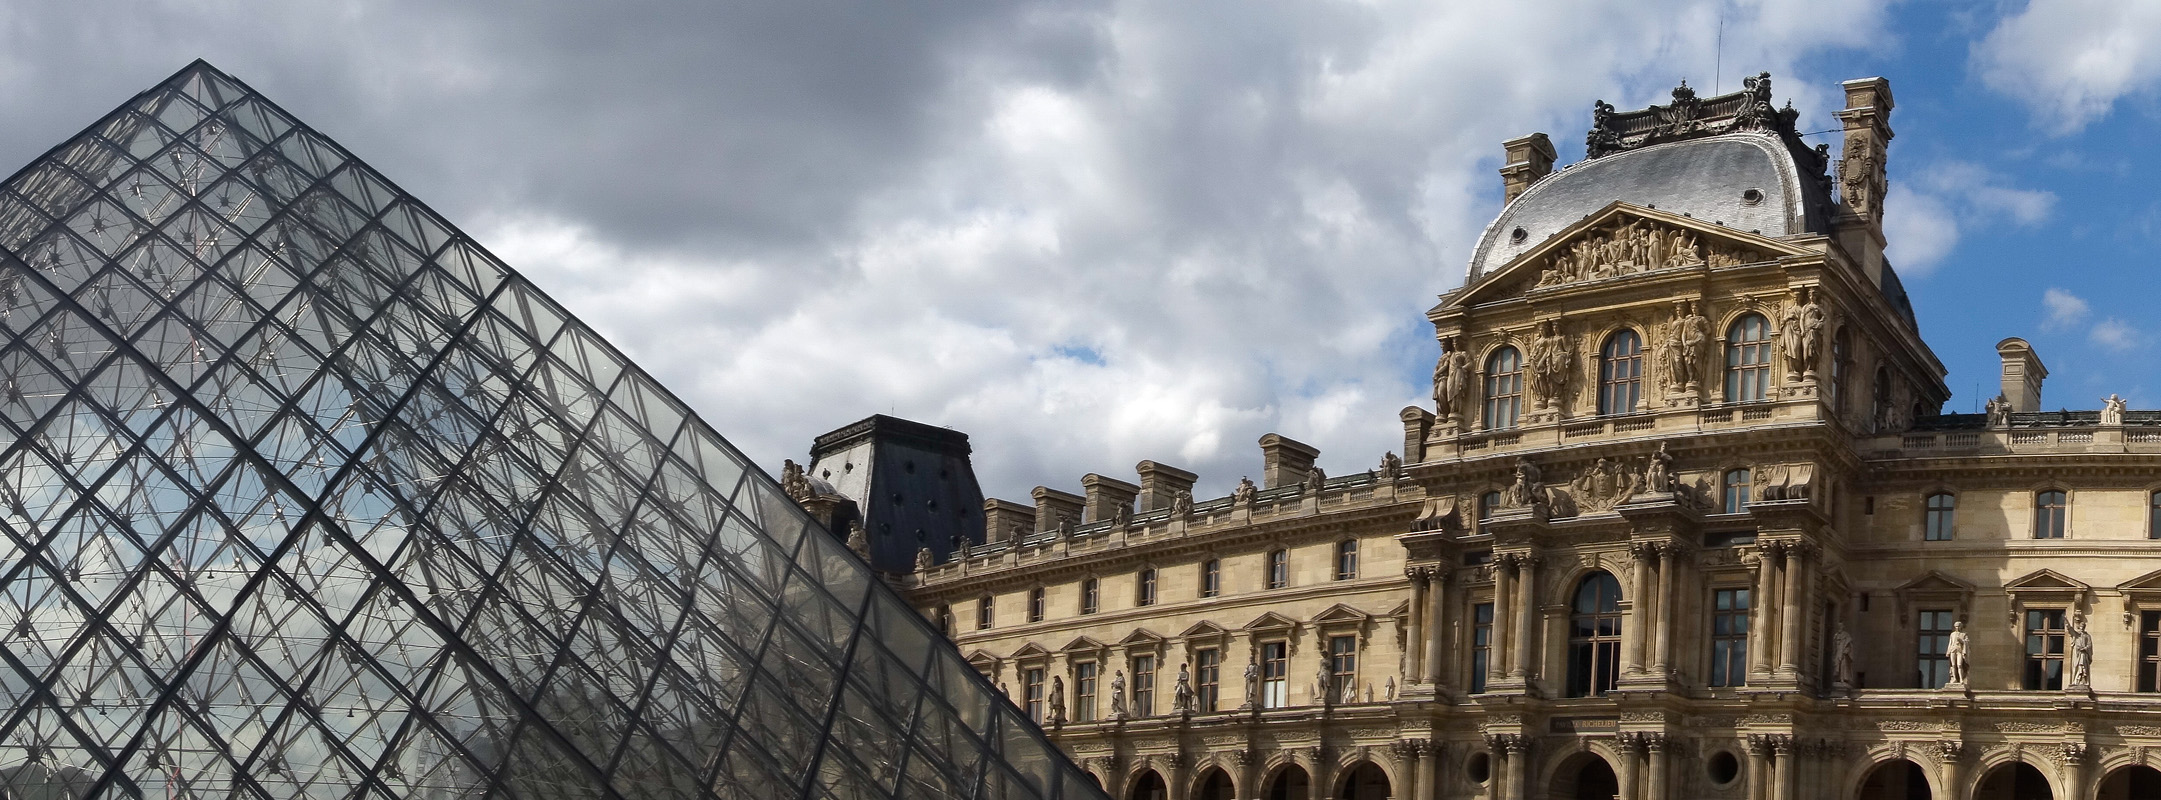 Le Louvre - Paris 1er